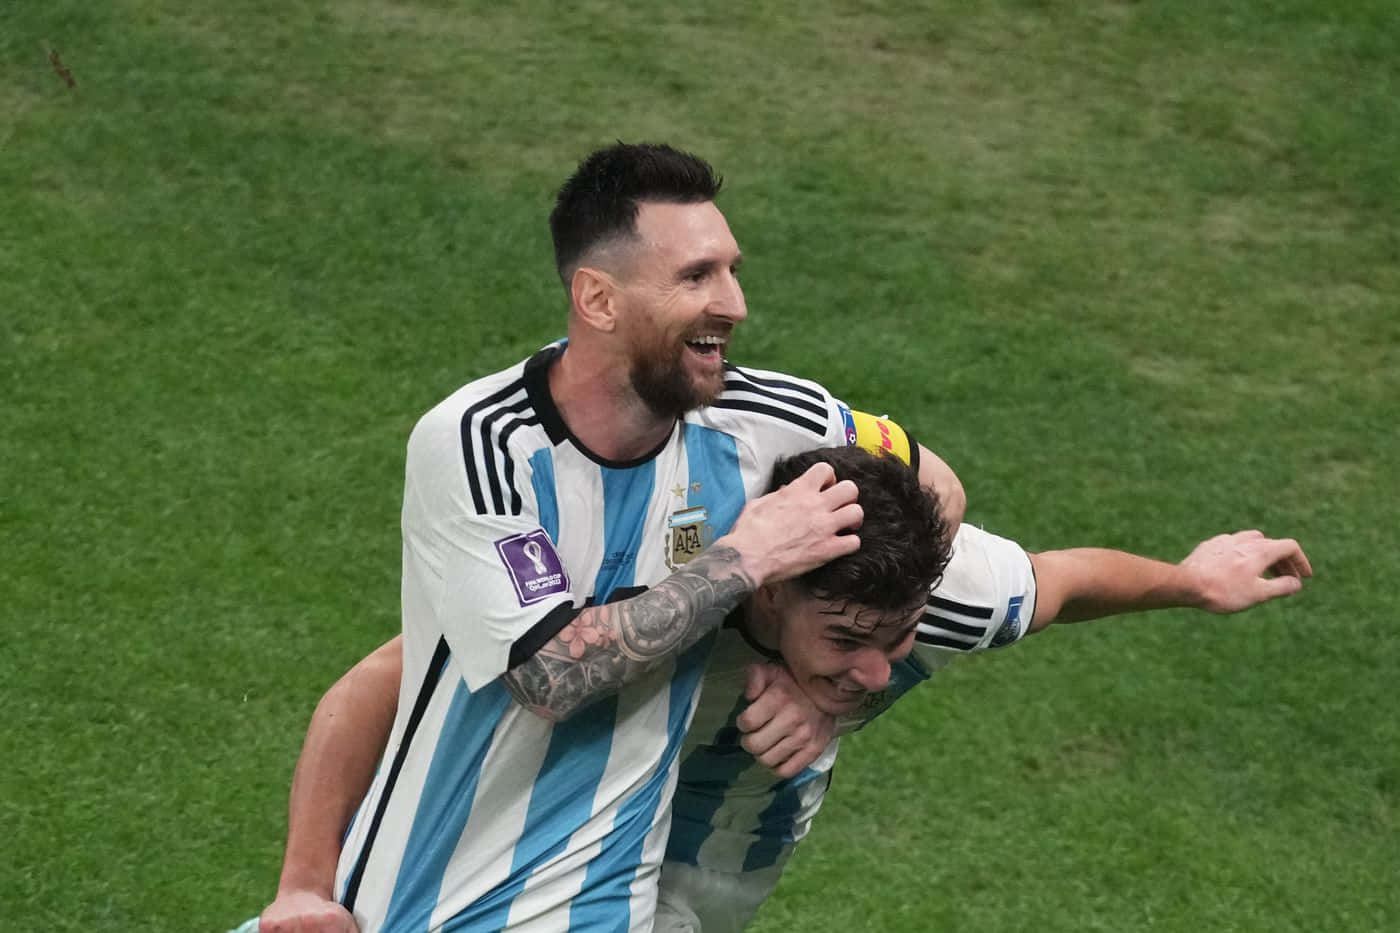 Thiagoalmada Und Superstar Lionel Messi Wallpaper